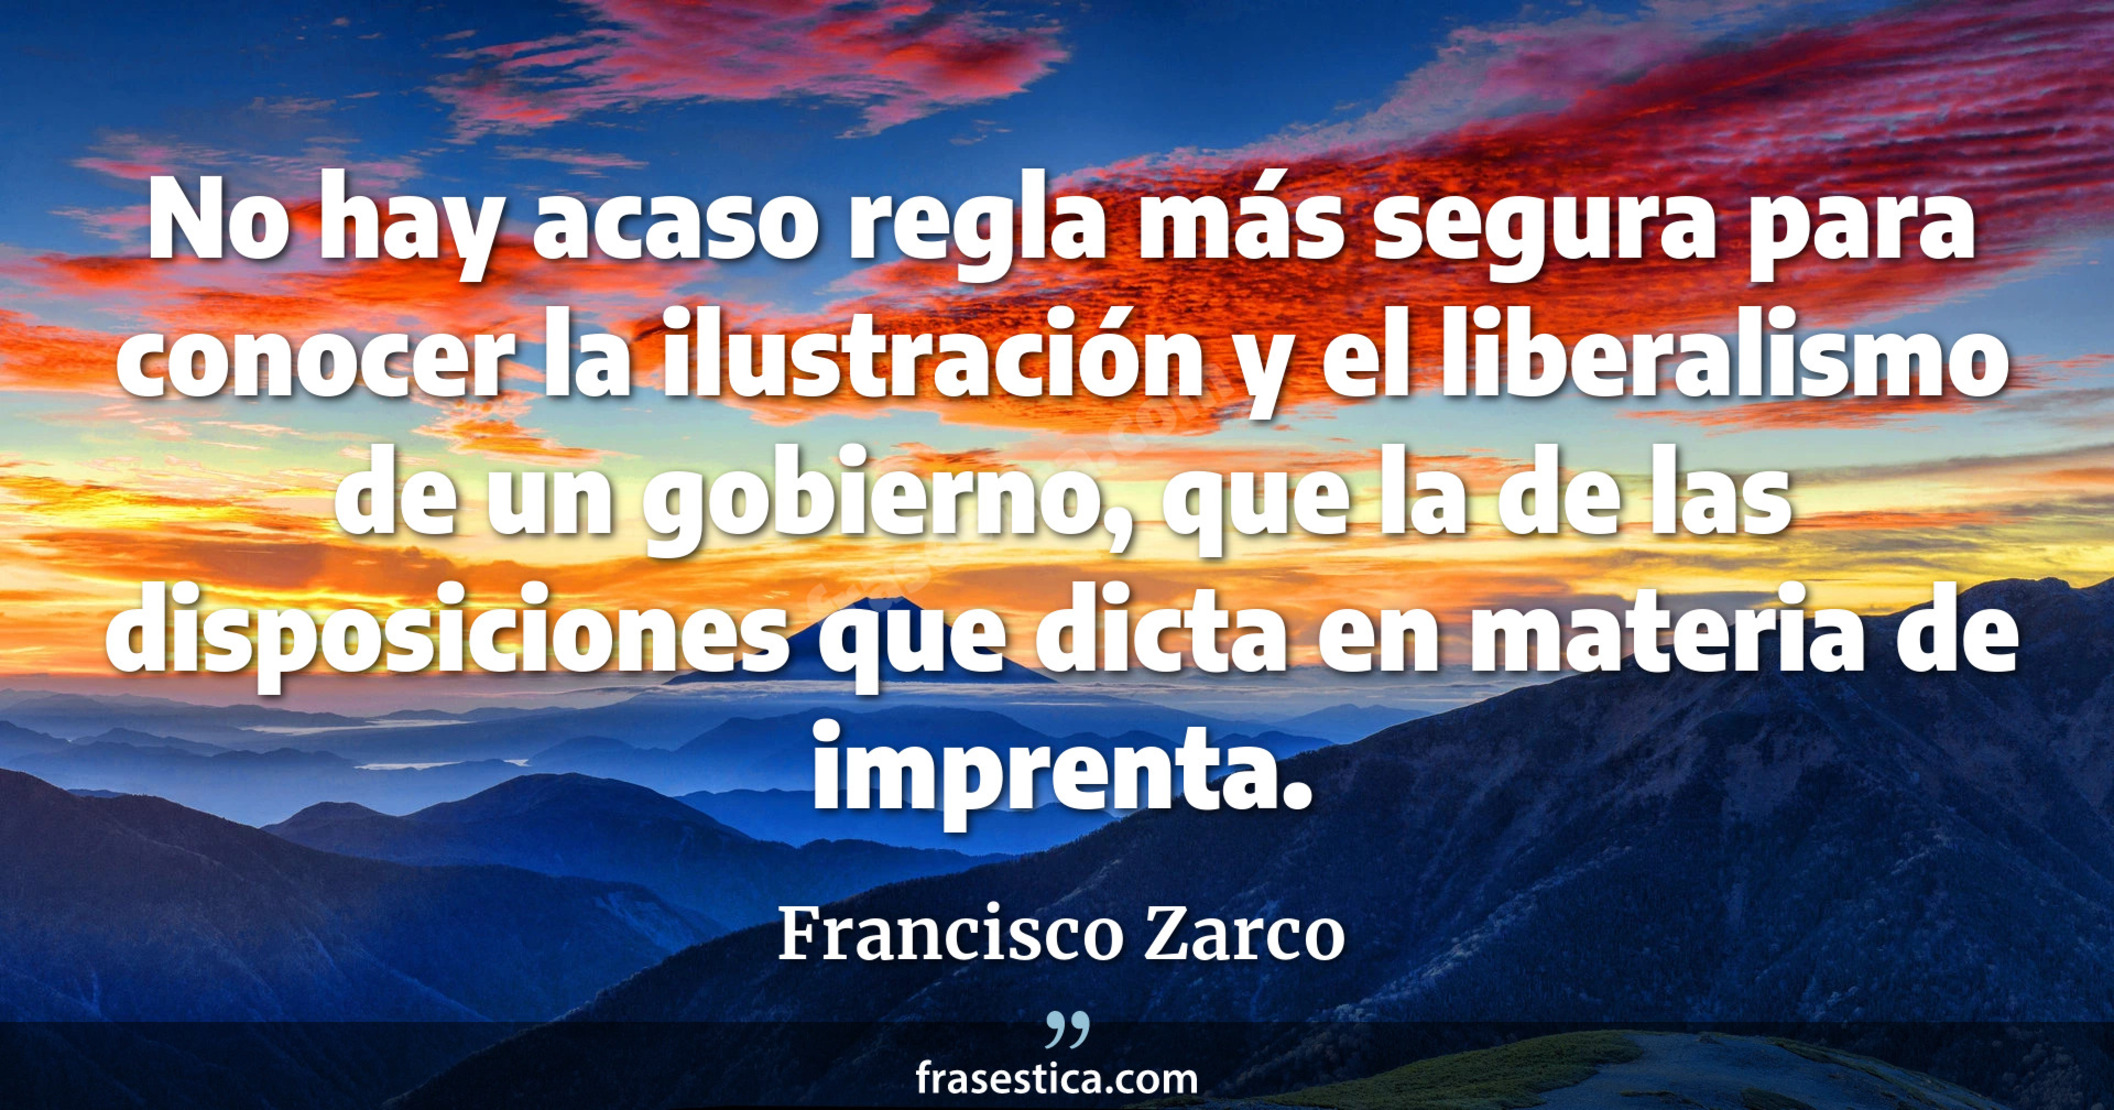 No hay acaso regla más segura para conocer la ilustración y el liberalismo de un gobierno, que la de las disposiciones que dicta en materia de imprenta. - Francisco Zarco